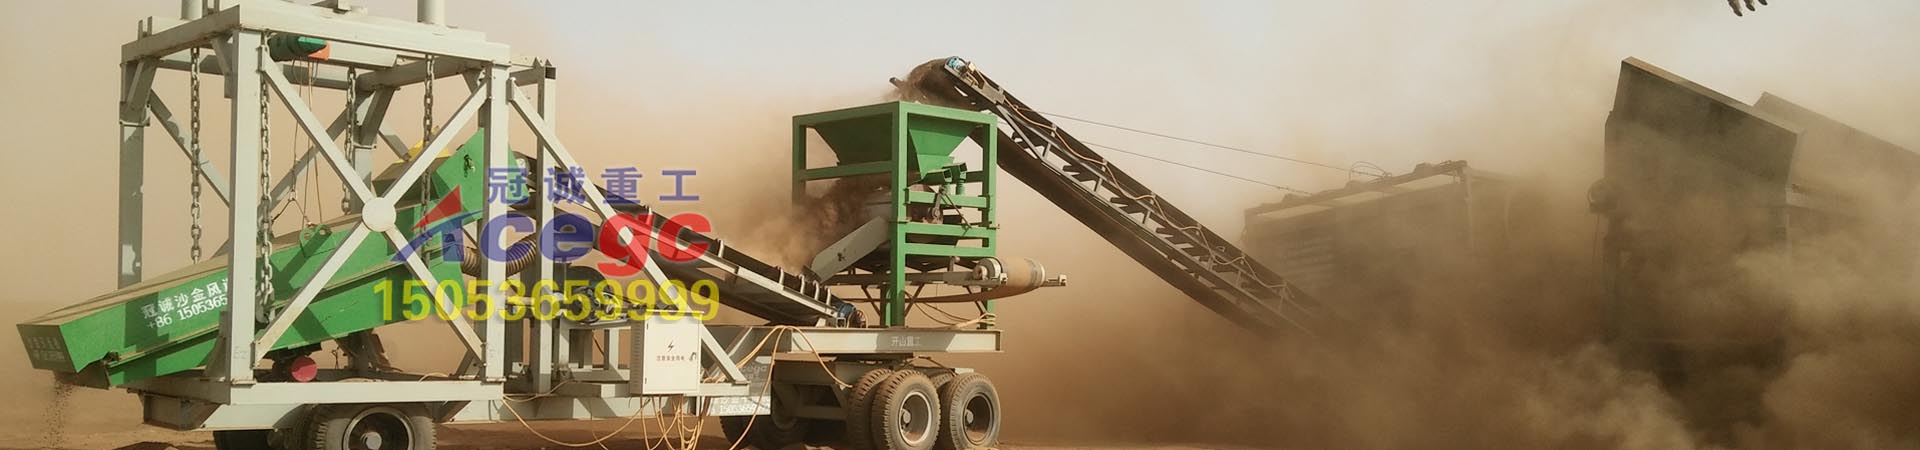 旱地淘金设备-干选|风选-无水淘金机械